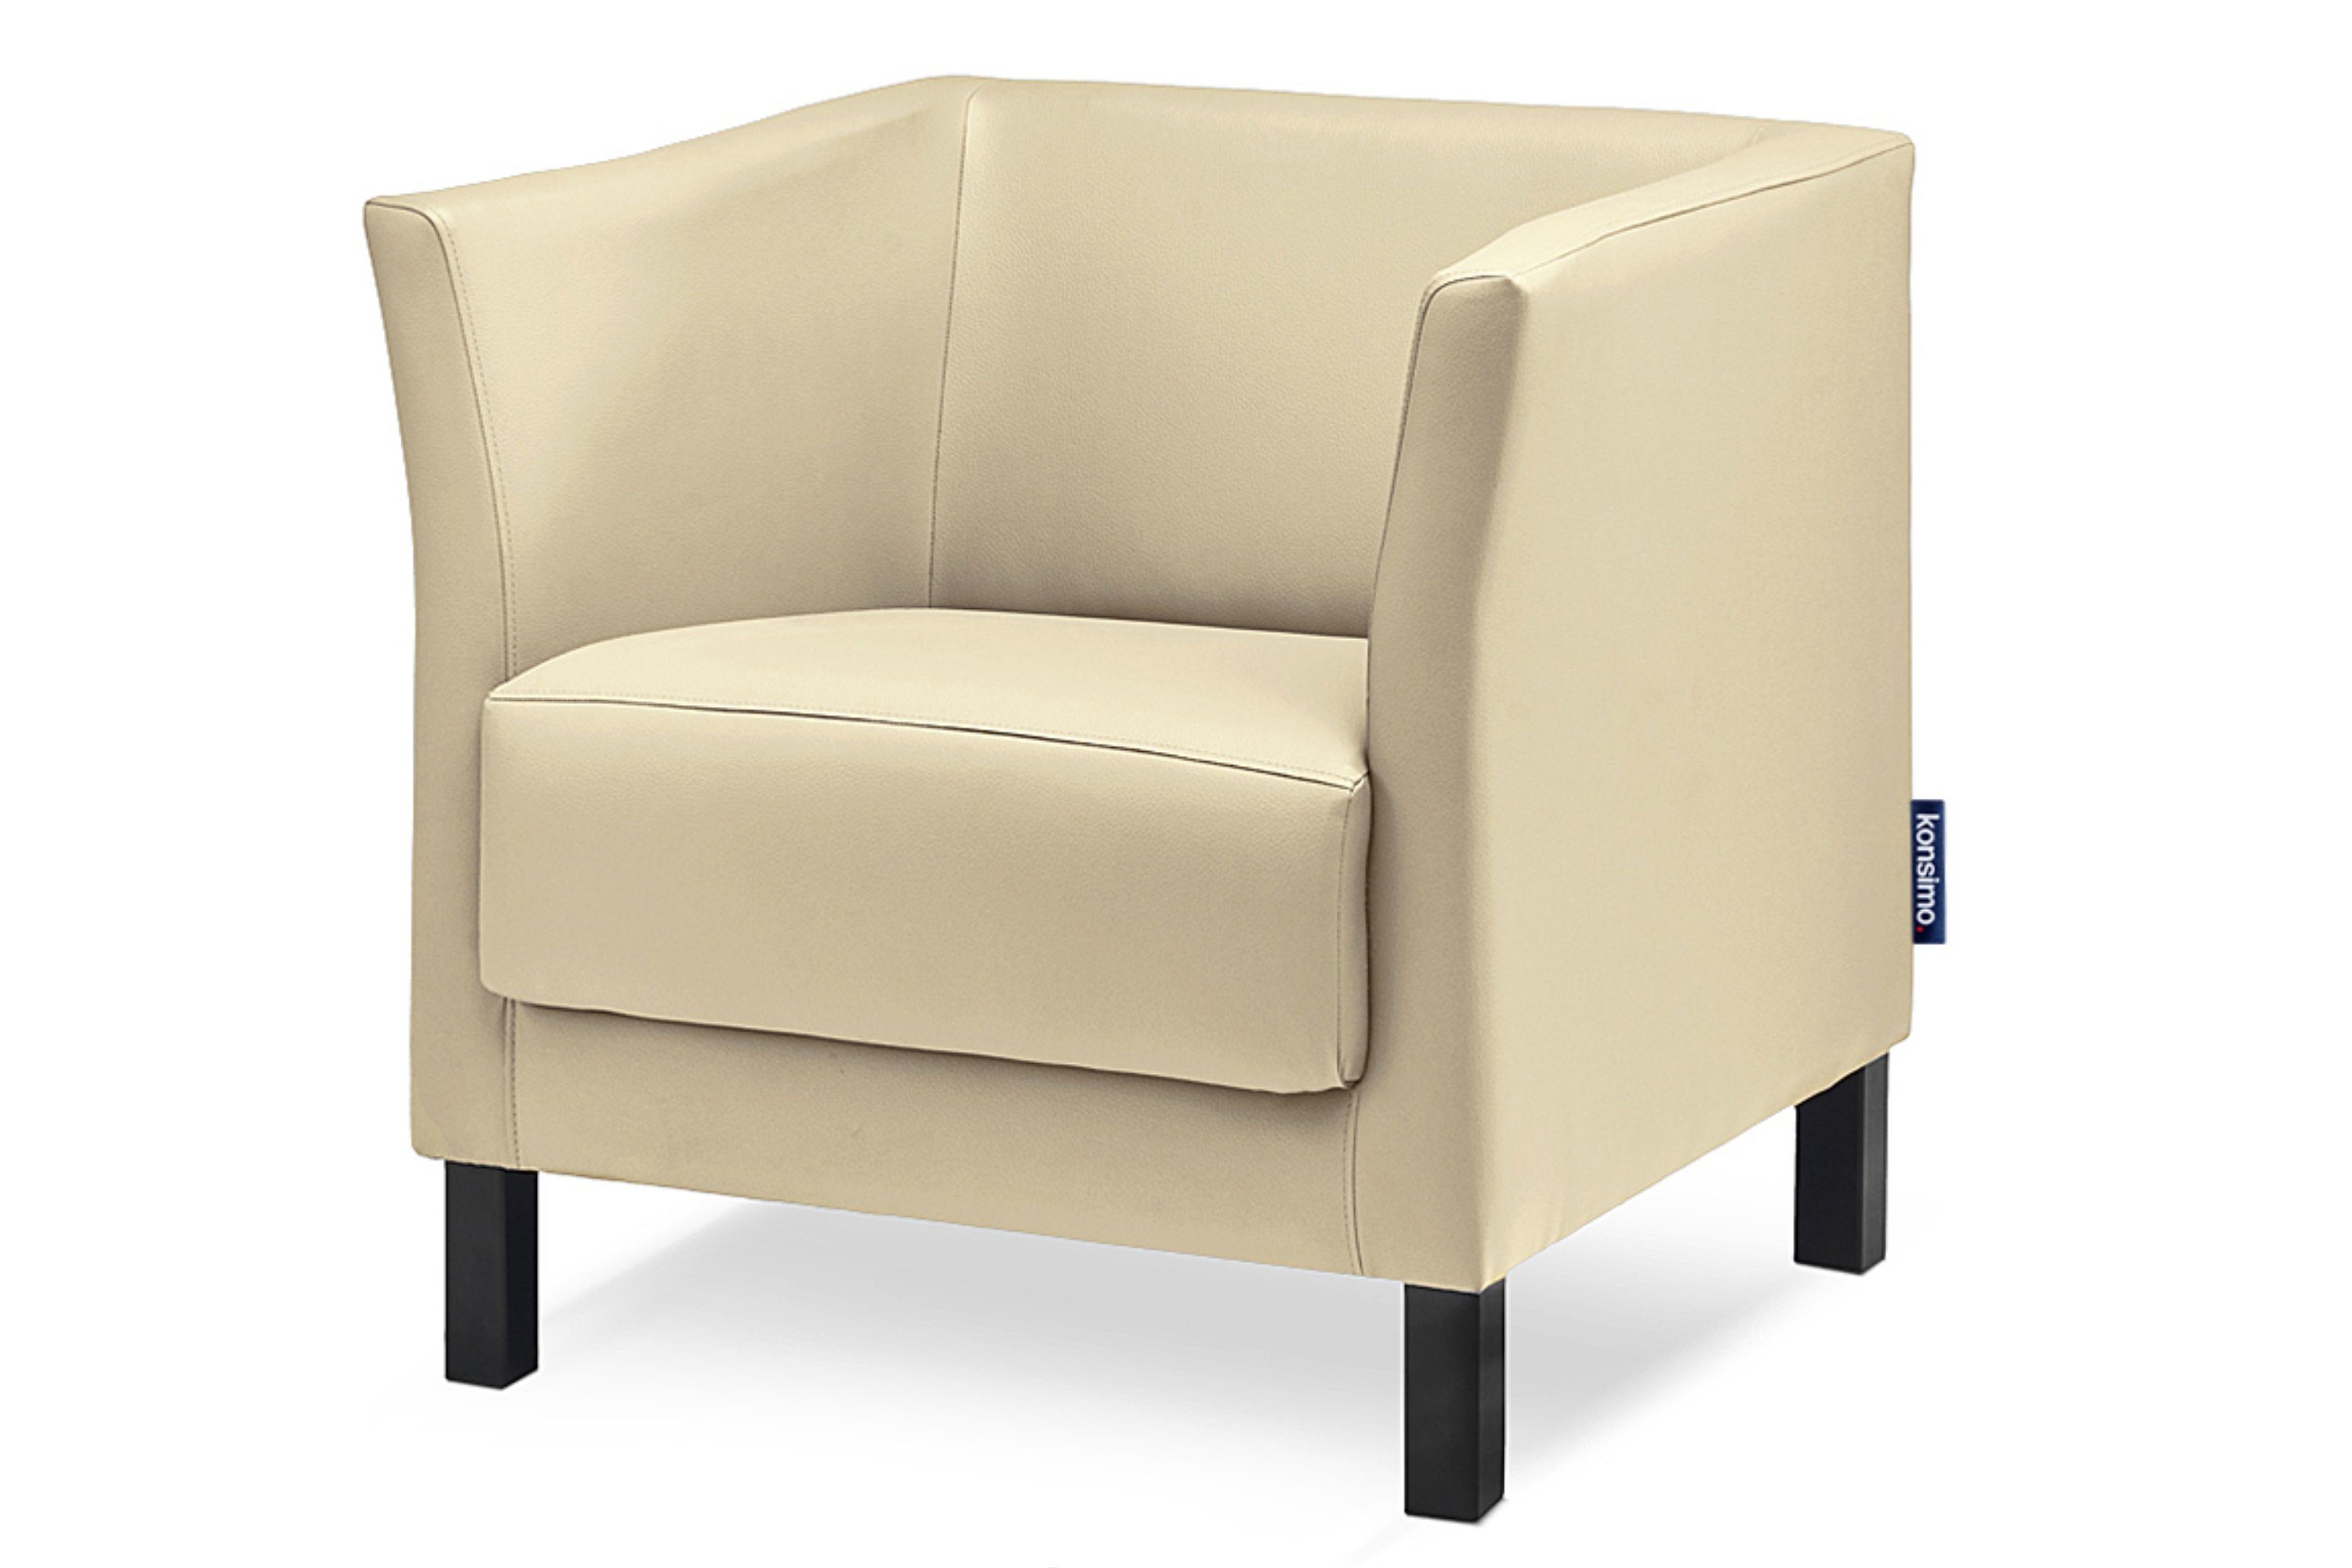 Konsimo Sessel ESPECTO Sessel, hohe Massivholzbeine, weiche Sitzfläche und hohe Rückenlehne, Kunstleder creme | creme | Creme